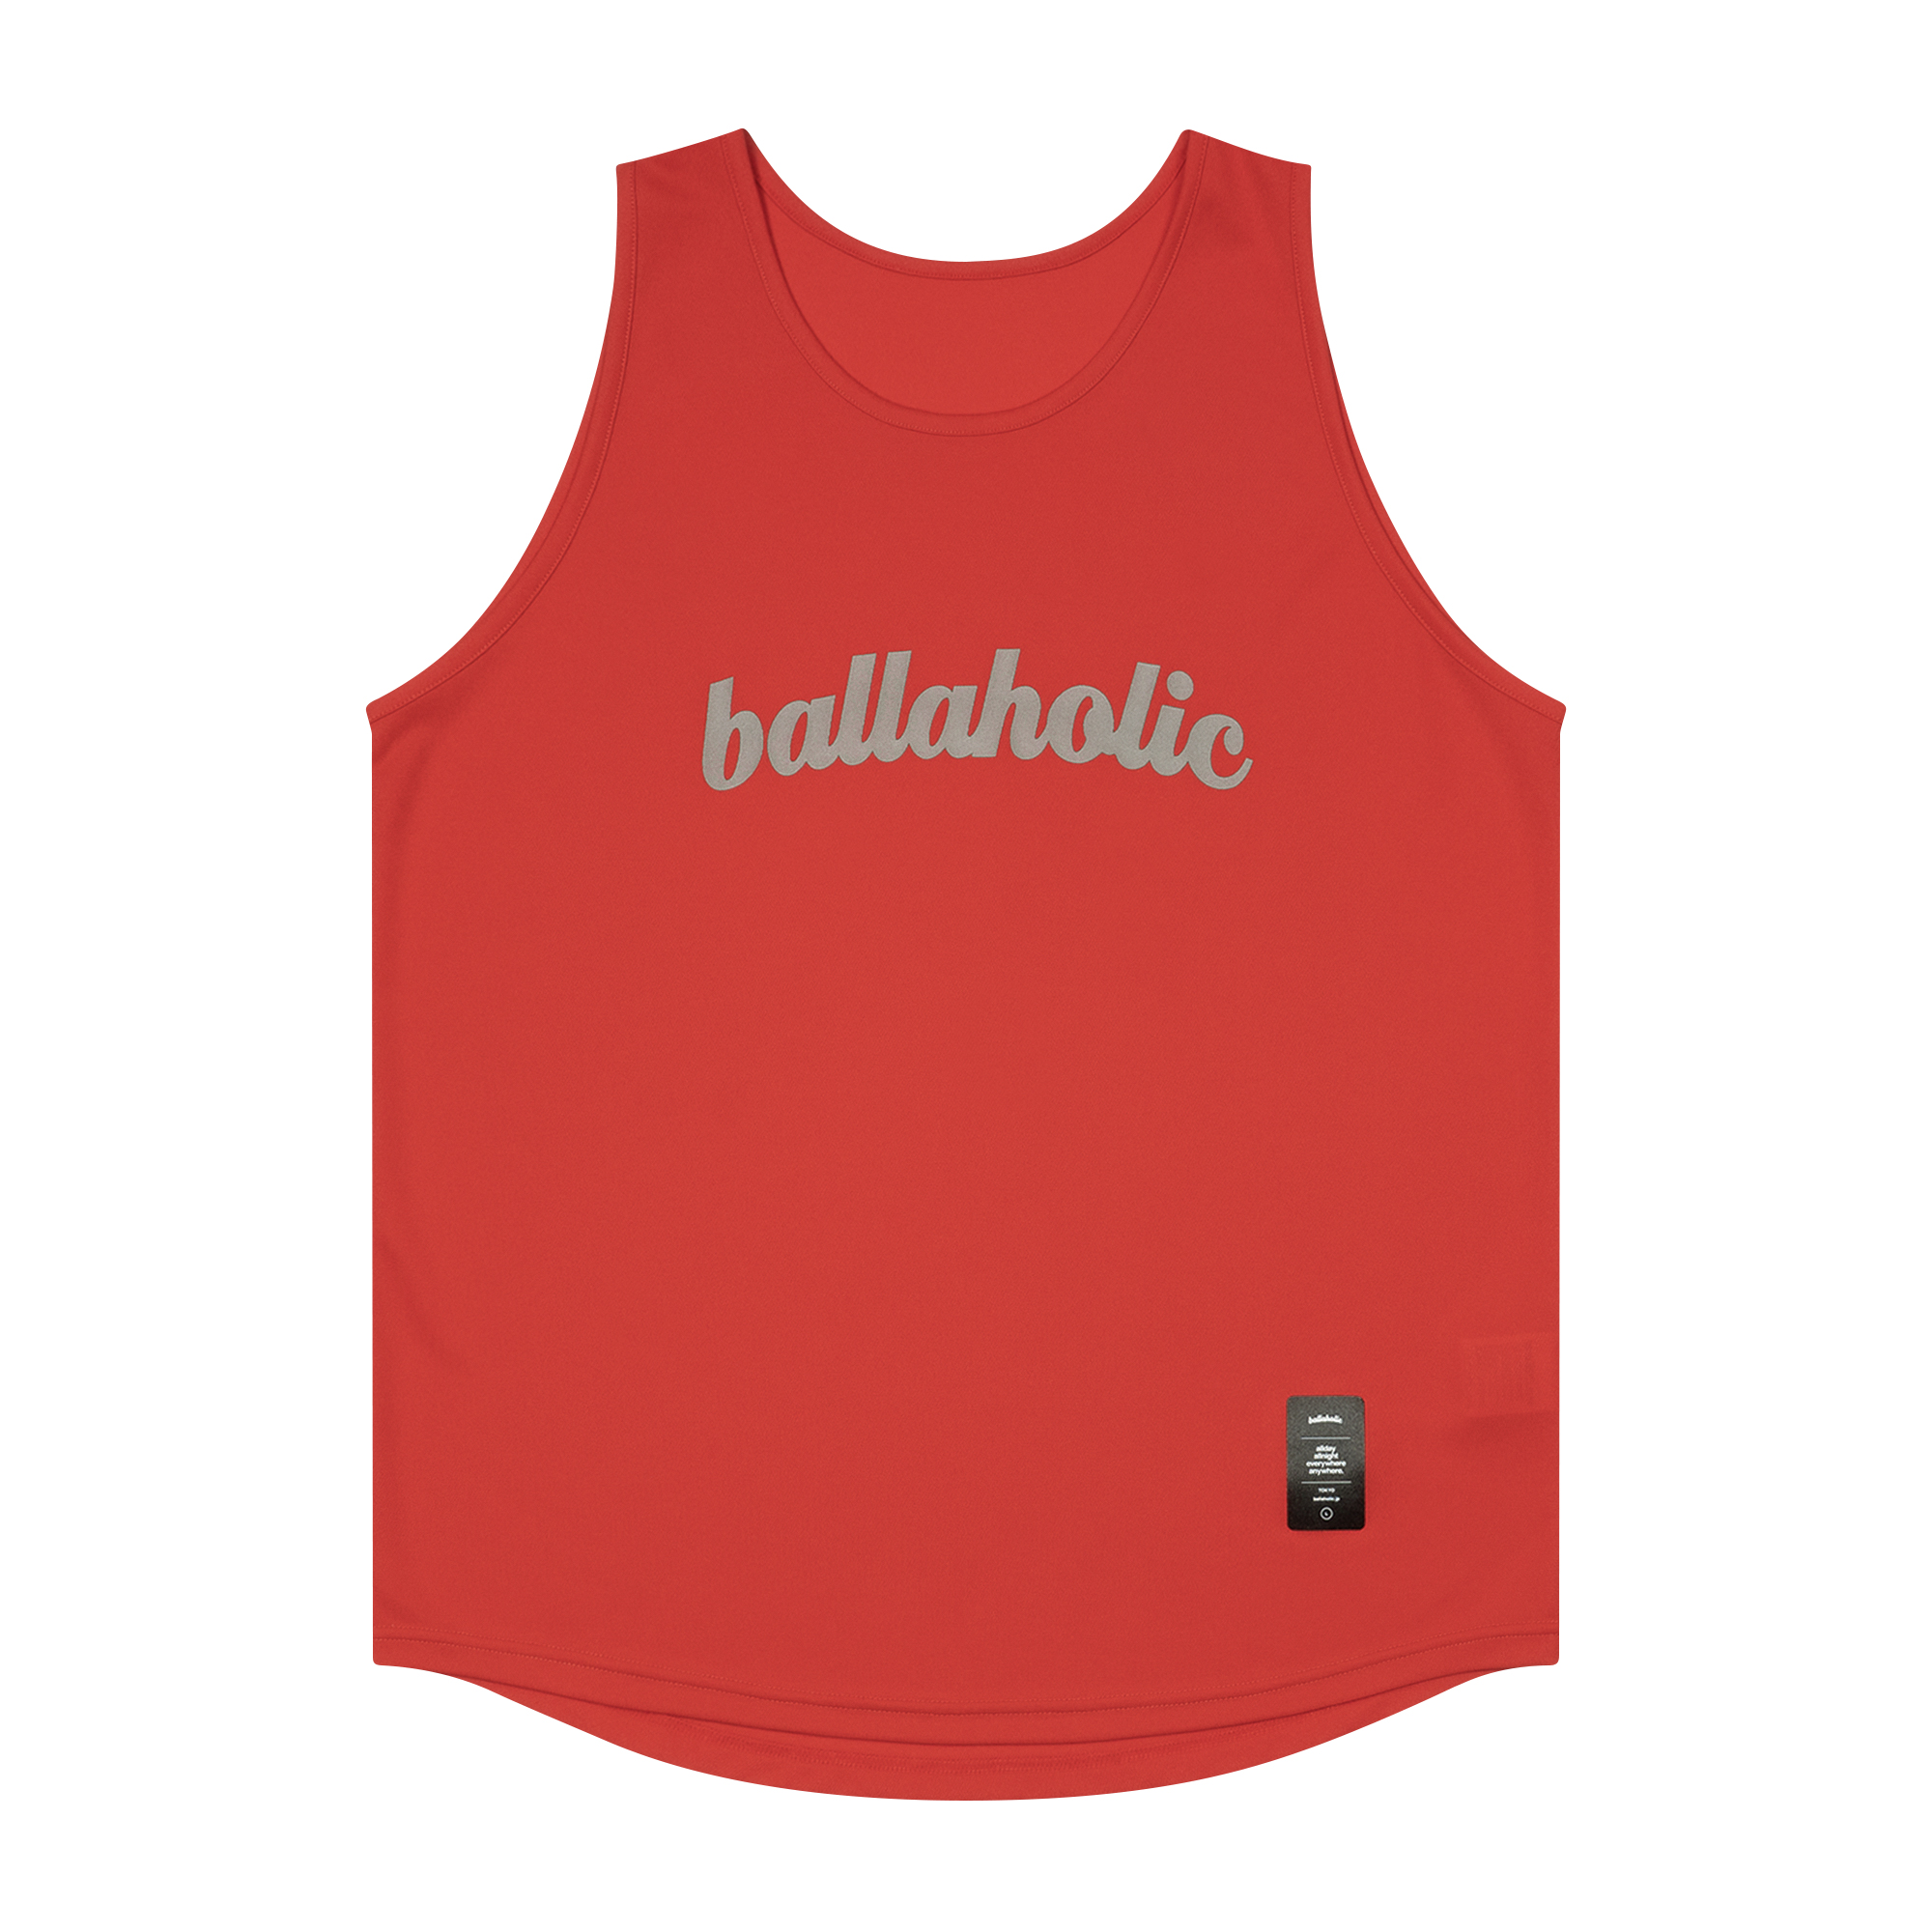 Ballaholic カレッジロゴボールマーク タンクトップ